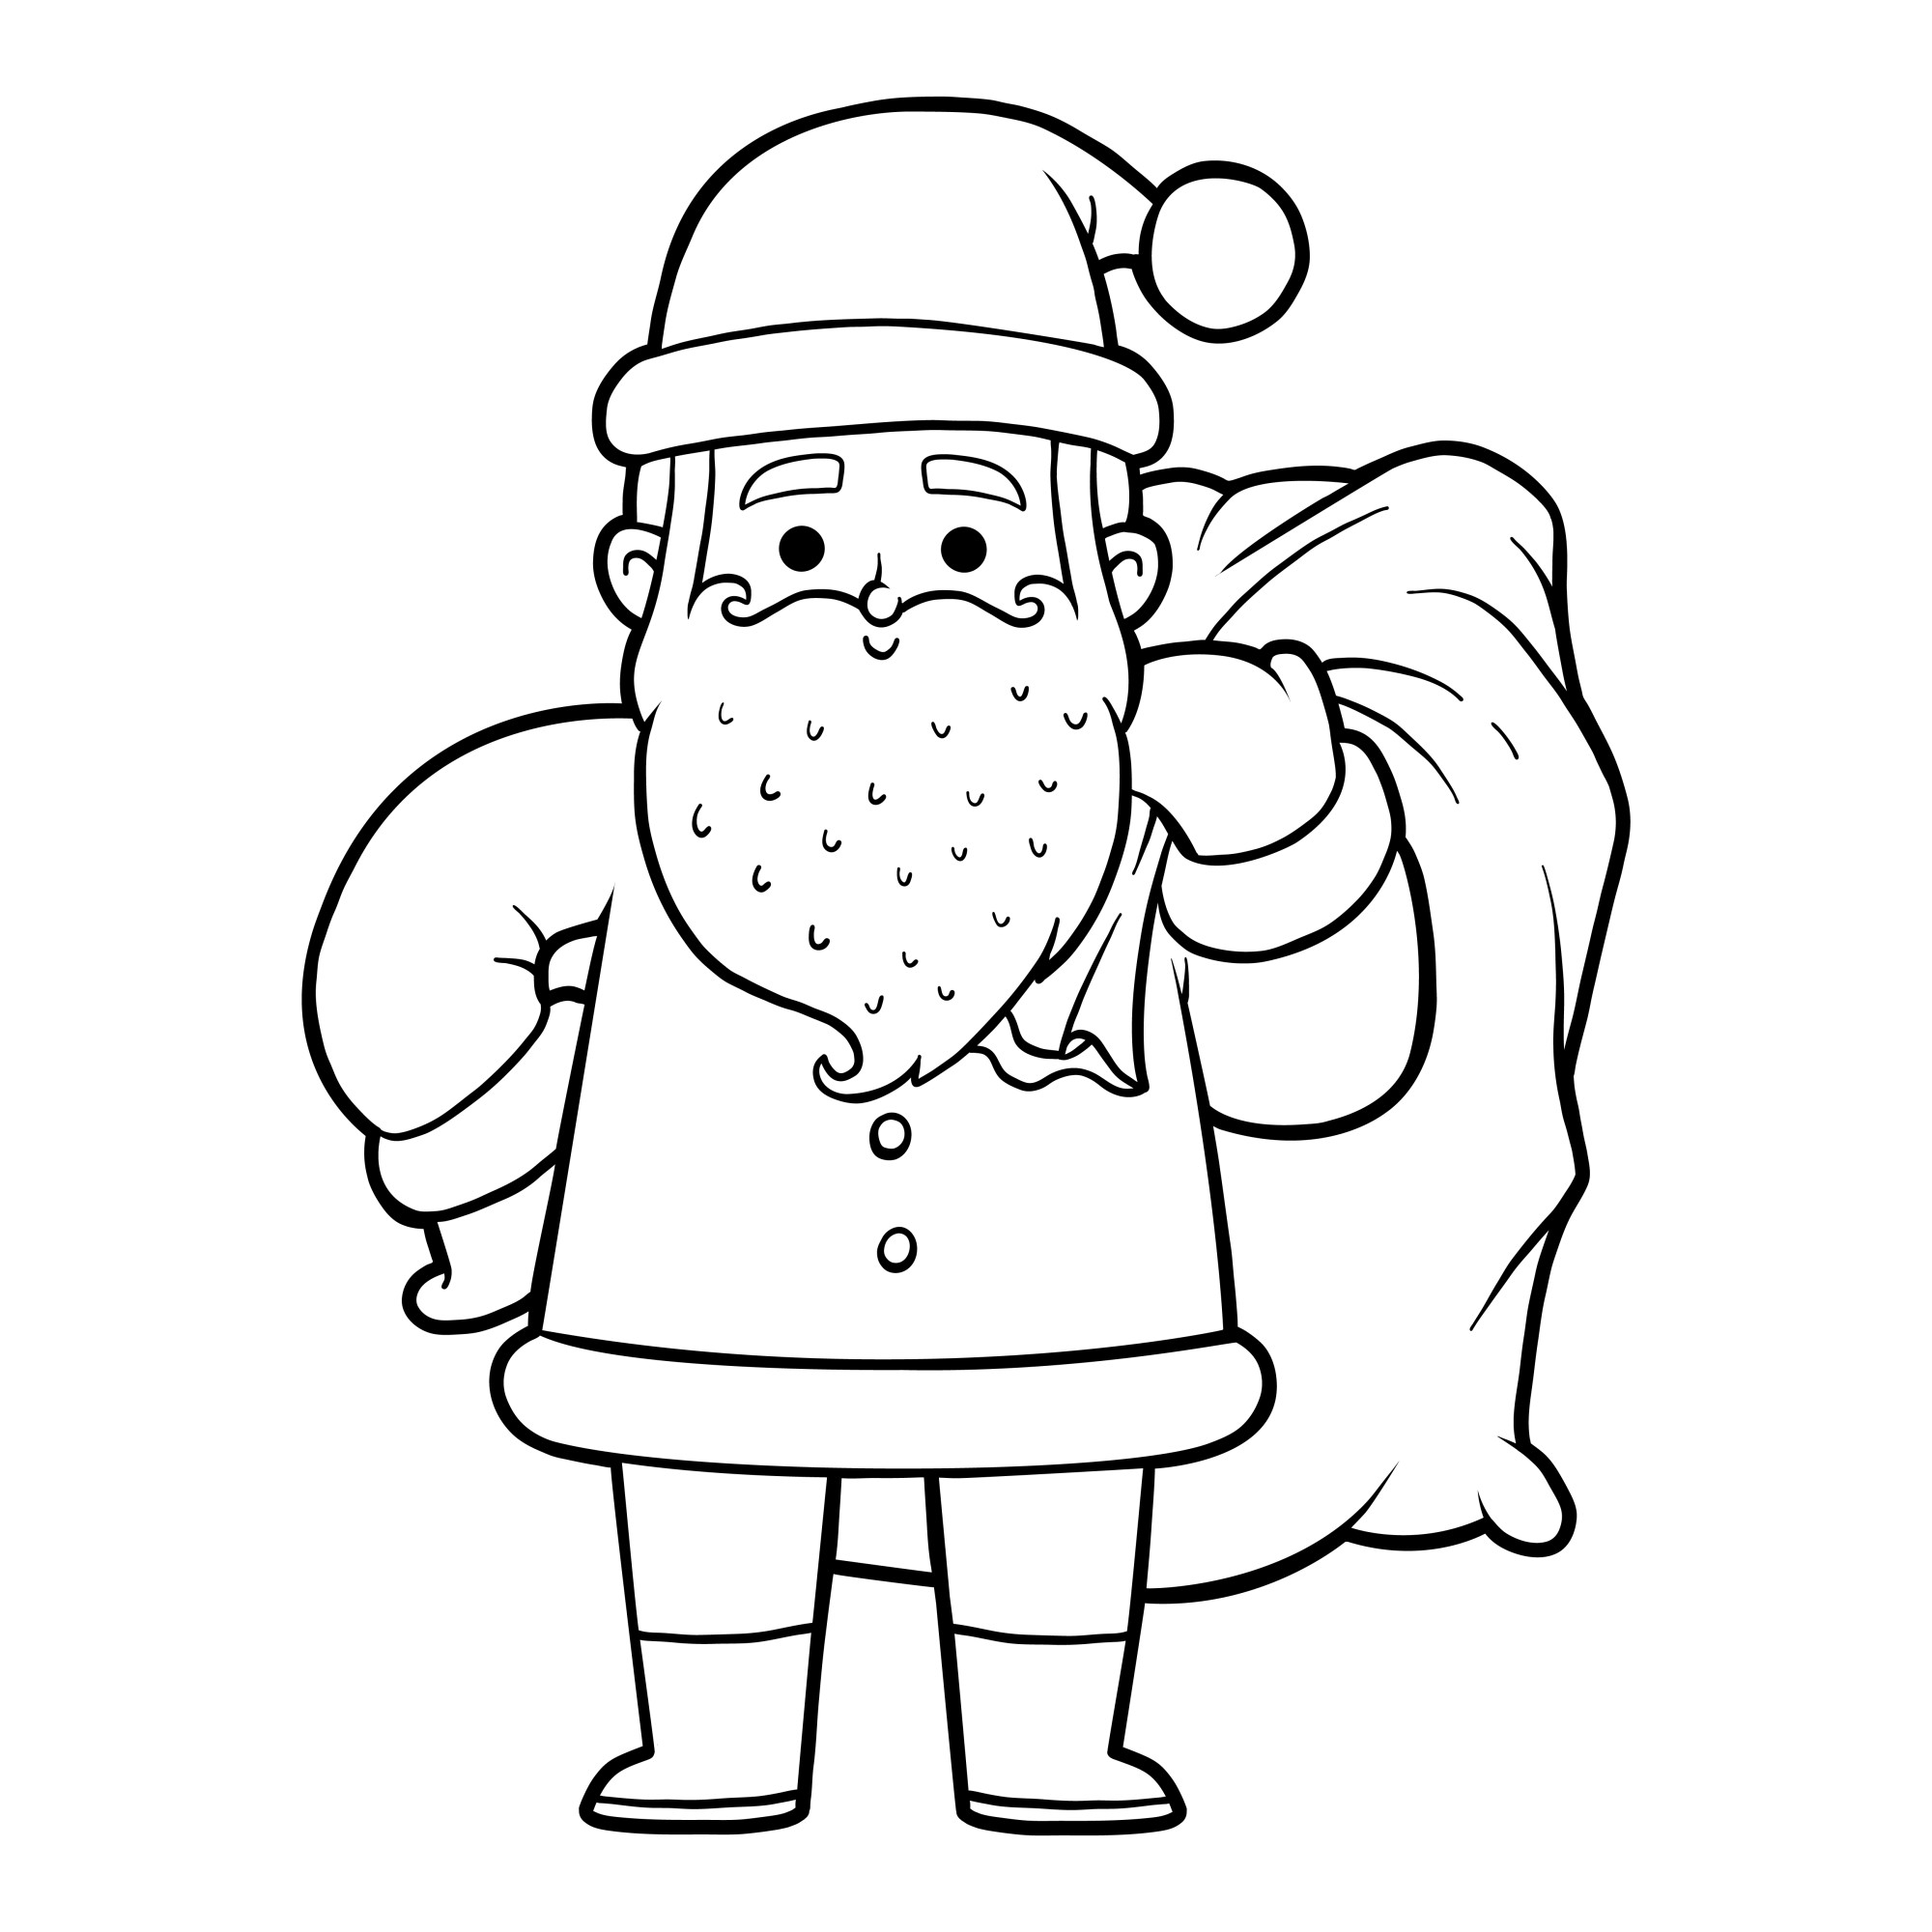 Раскраска для детей: дед мороз стоит в шапке и большим мешком подарков на плече